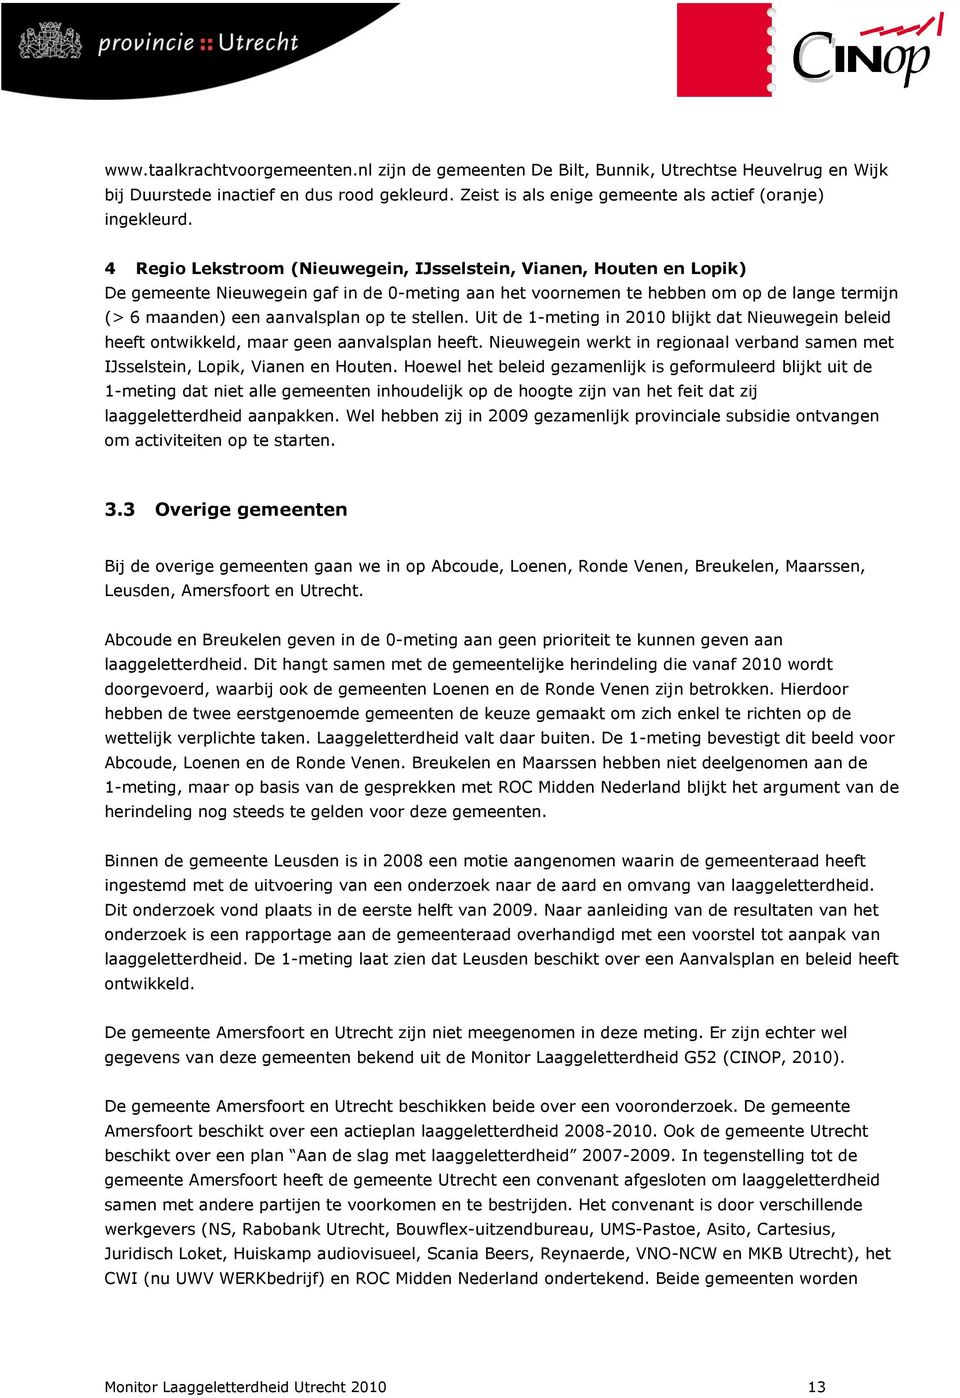 stellen. Uit de 1-meting in 2010 blijkt dat Nieuwegein beleid heeft ontwikkeld, maar geen aanvalsplan heeft. Nieuwegein werkt in regionaal verband samen met IJsselstein, Lopik, Vianen en Houten.